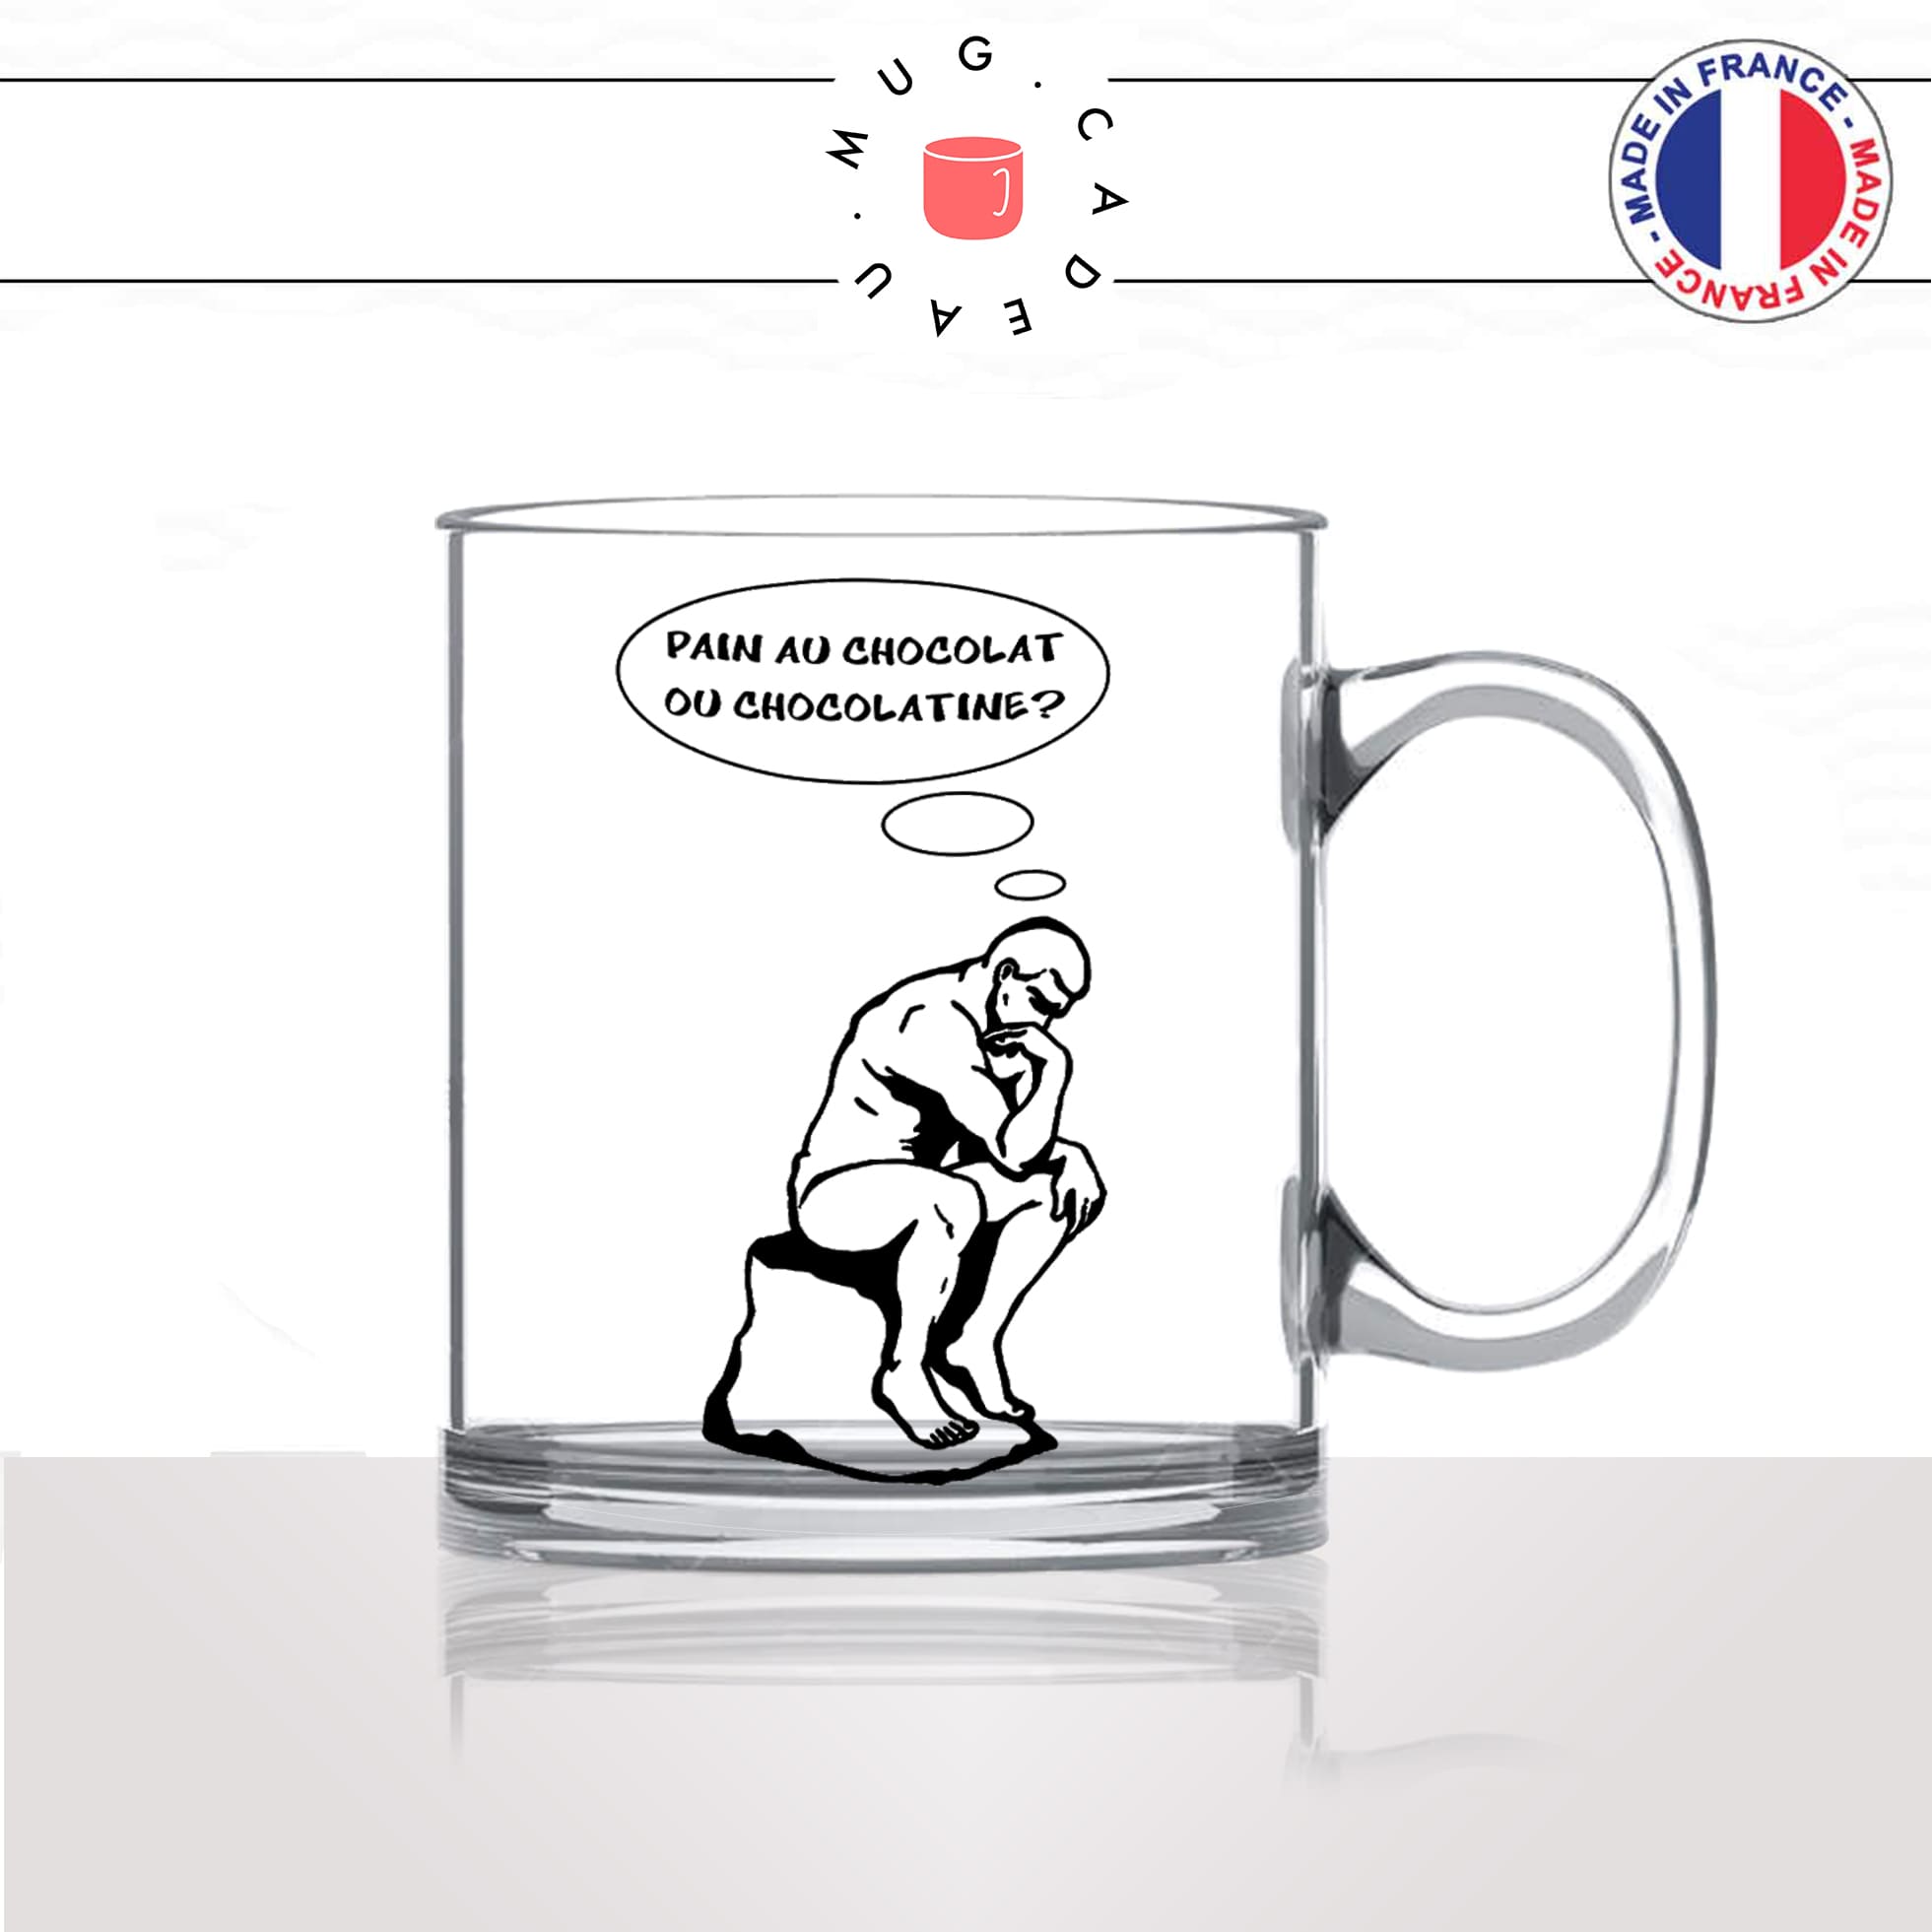 mug-tasse-en-verre-transparent-glass-le-penseur-de-rodin-pain-chocolat-chocolatine-vienoiserie-parodie-humour-fun-idée-cadeau-originale-cool2